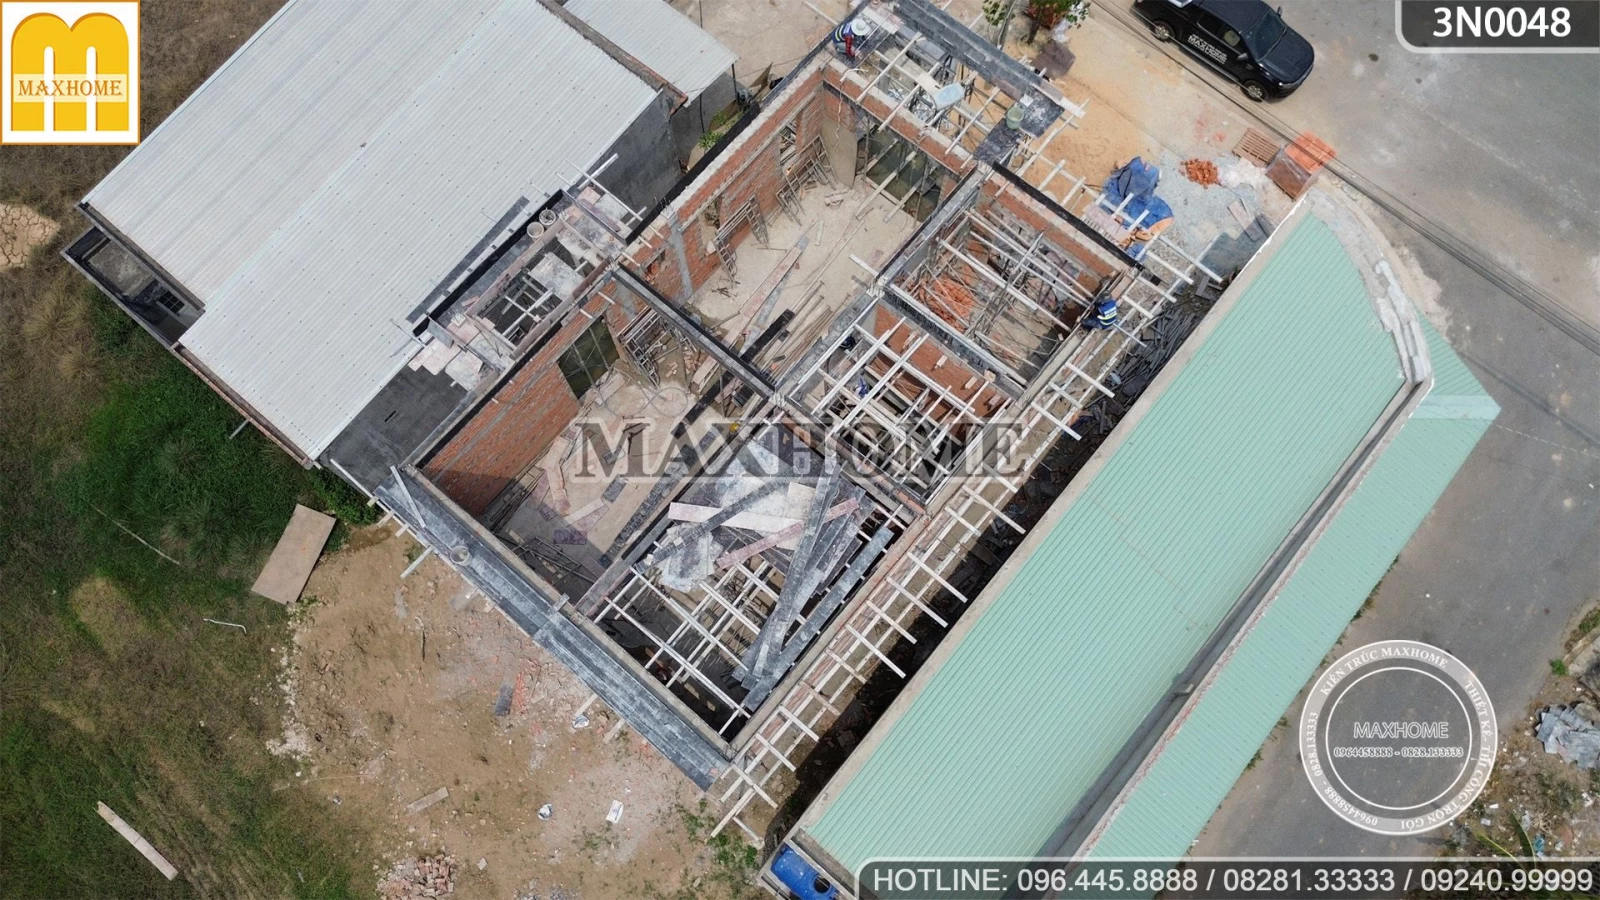 Thanh tra Maxhome kiểm tra tiến độ chất lượng công trình nhà 2 tầng mái Nhật | MH03215